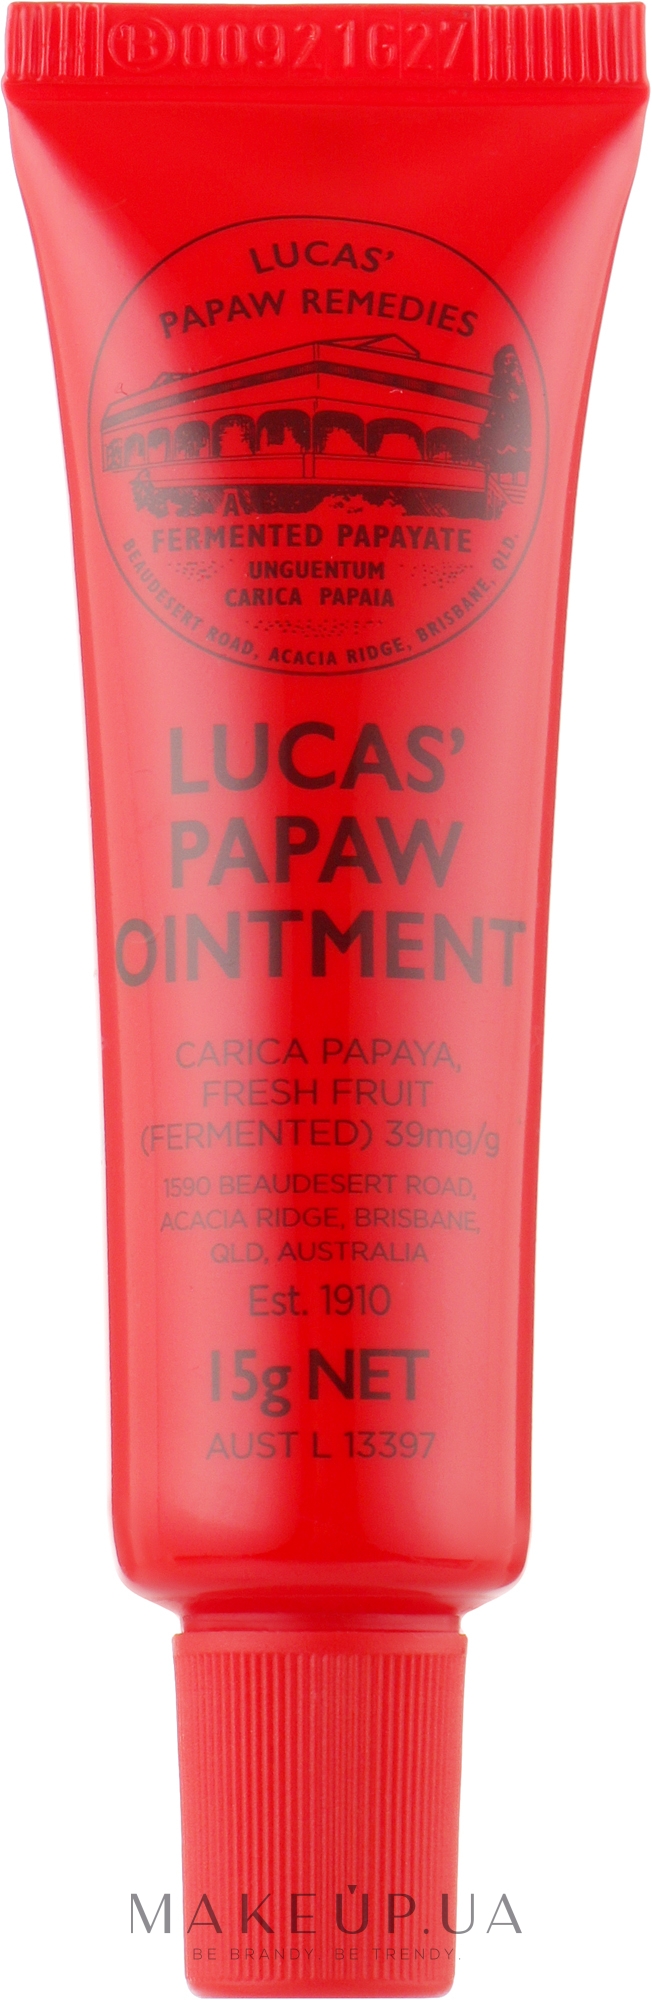 Восстанавливающий лечебный бальзам для губ - Lucas Papaw Remedies Ointment Balm — фото 15g